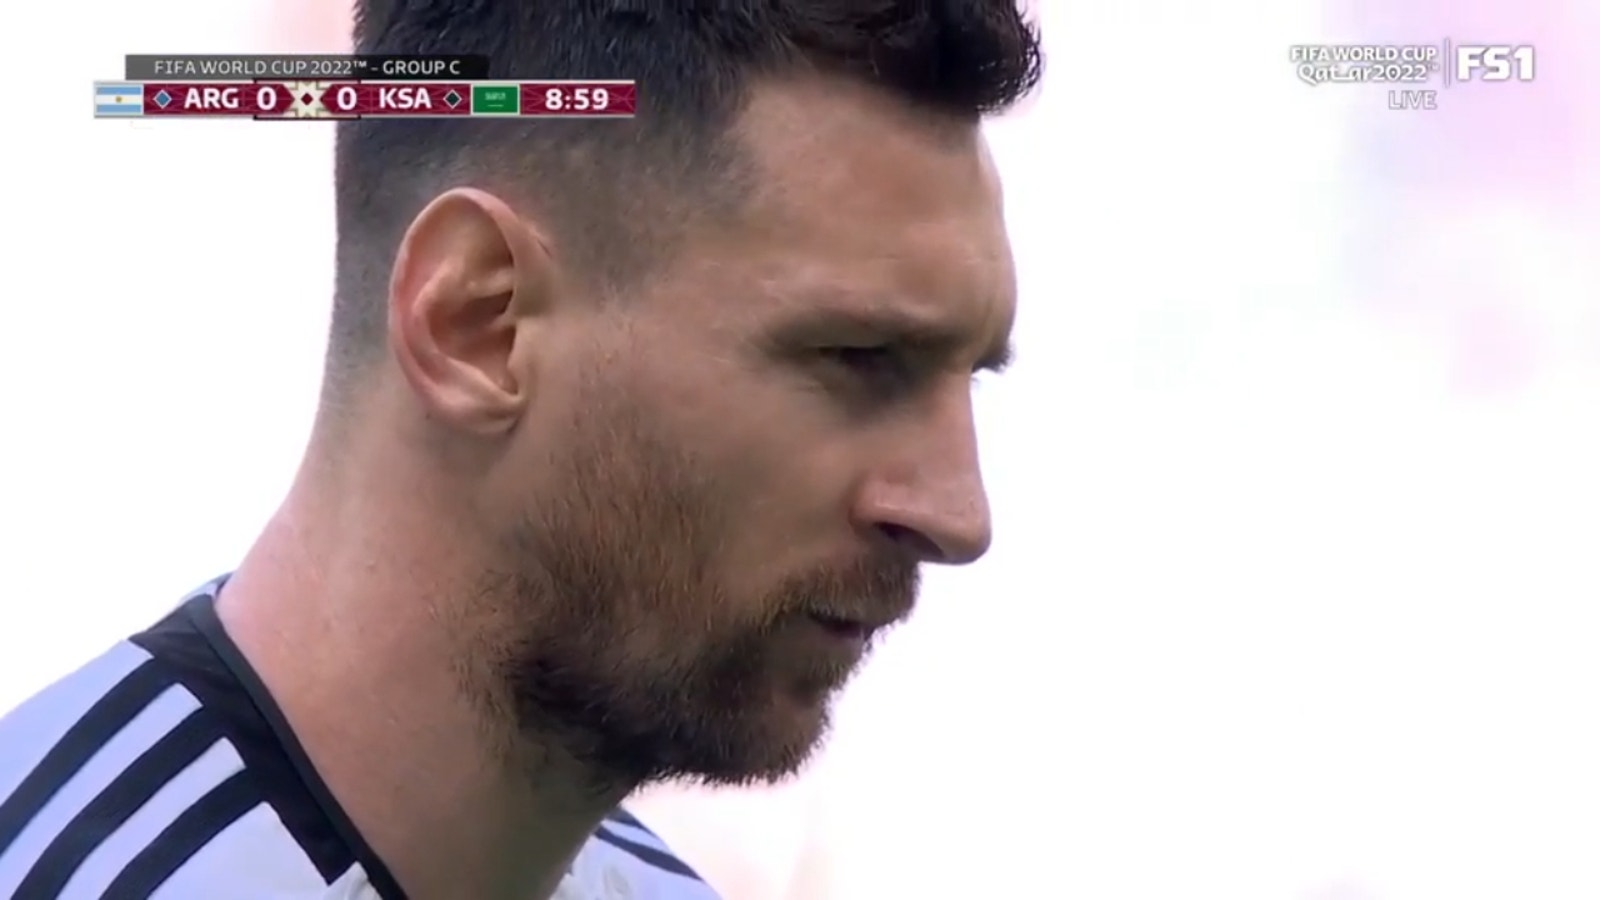 Lionel Messi segna un PK al 10' per l'Argentina che si porta in vantaggio per 1-0 sull'Arabia Saudita